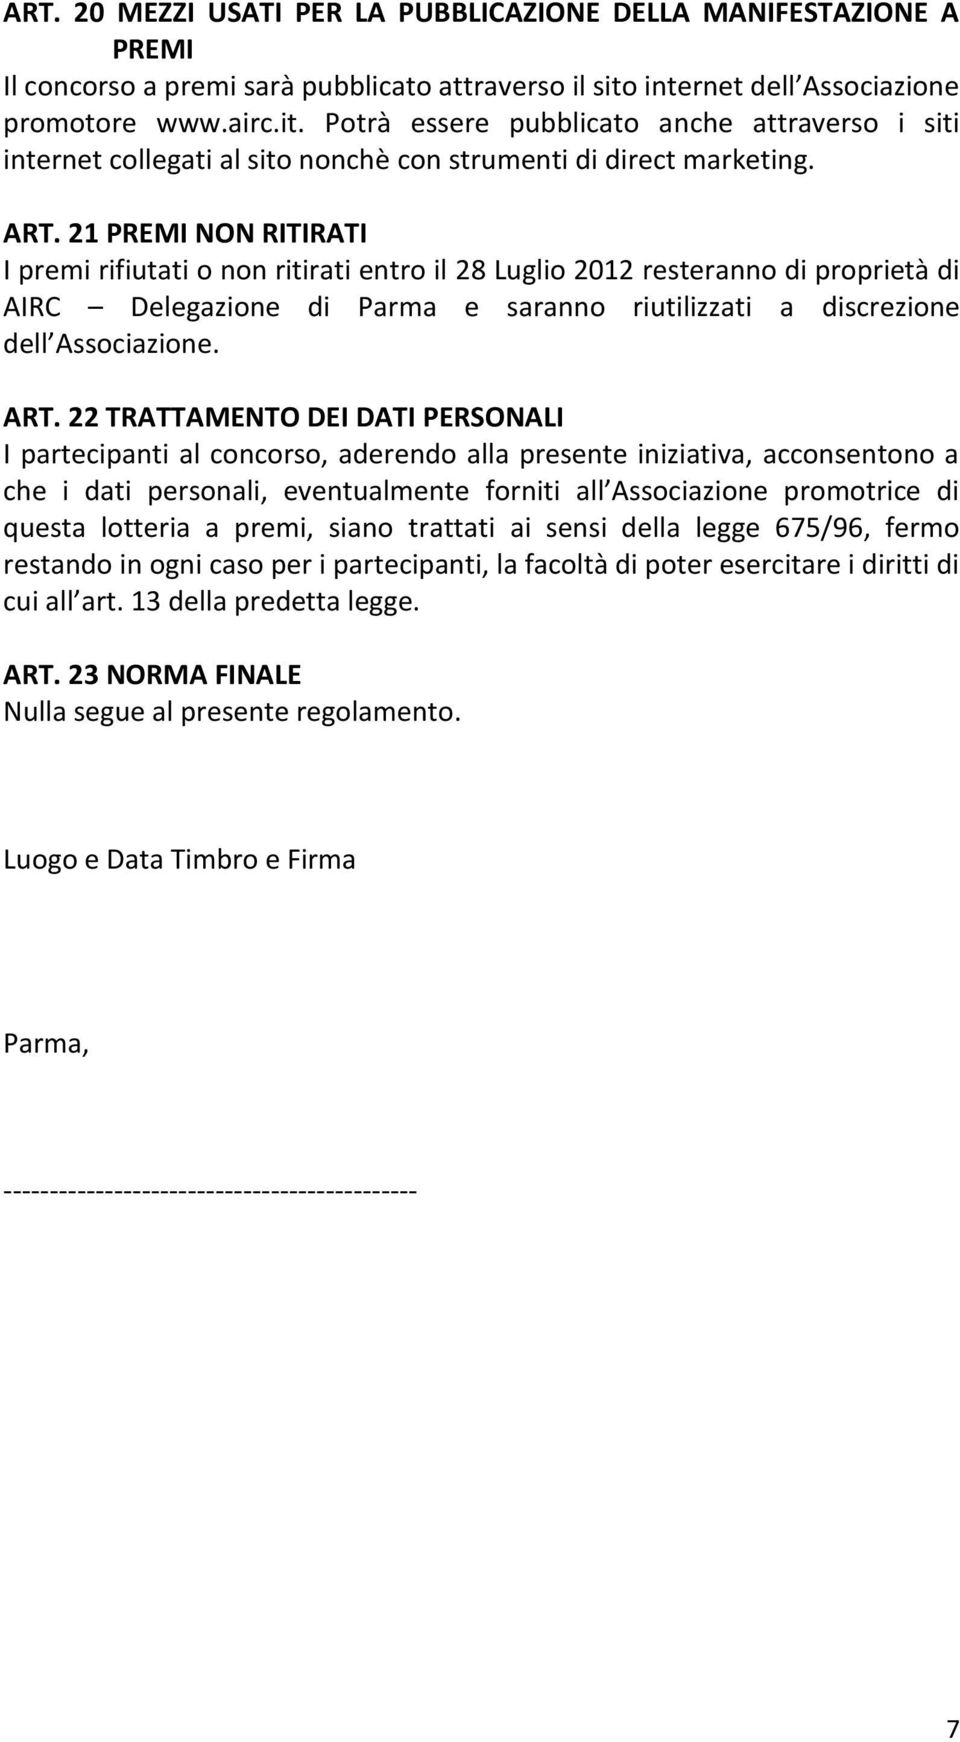 21 PREMI NON RITIRATI I premi rifiutati o non ritirati entro il 28 Luglio 2012 resteranno di proprietà di AIRC Delegazione di Parma e saranno riutilizzati a discrezione dell Associazione. ART.